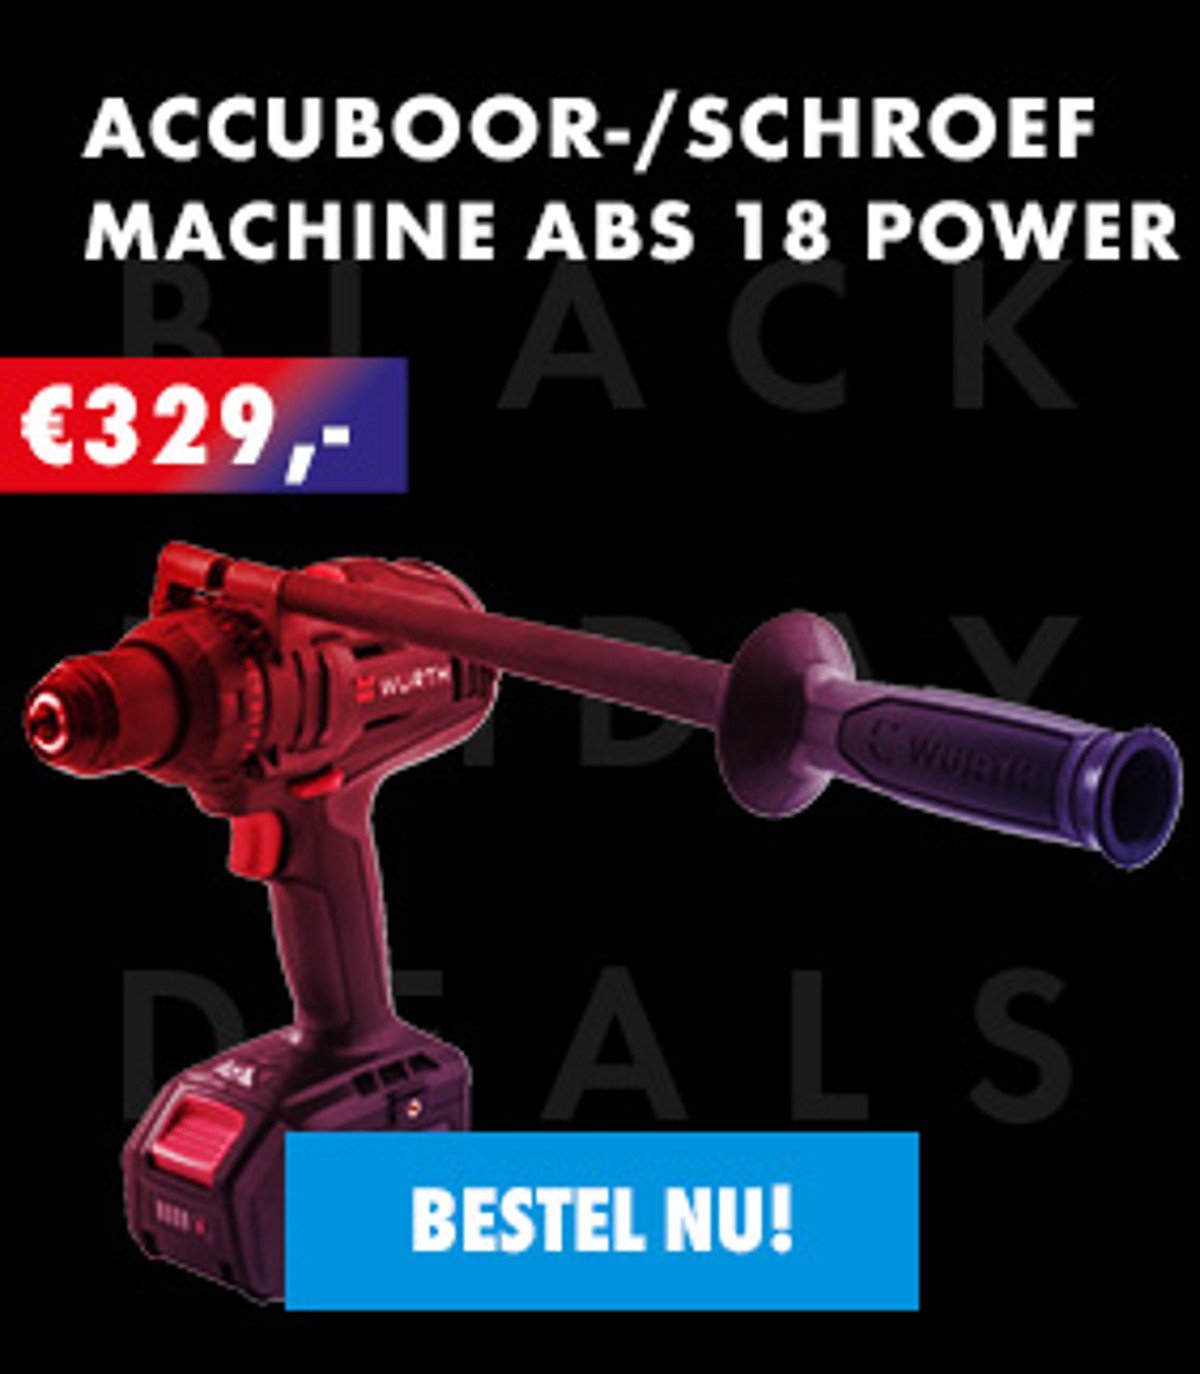 Accuboor-/schroefmachine ABS 18 Power incl. 2x4,0 Ah